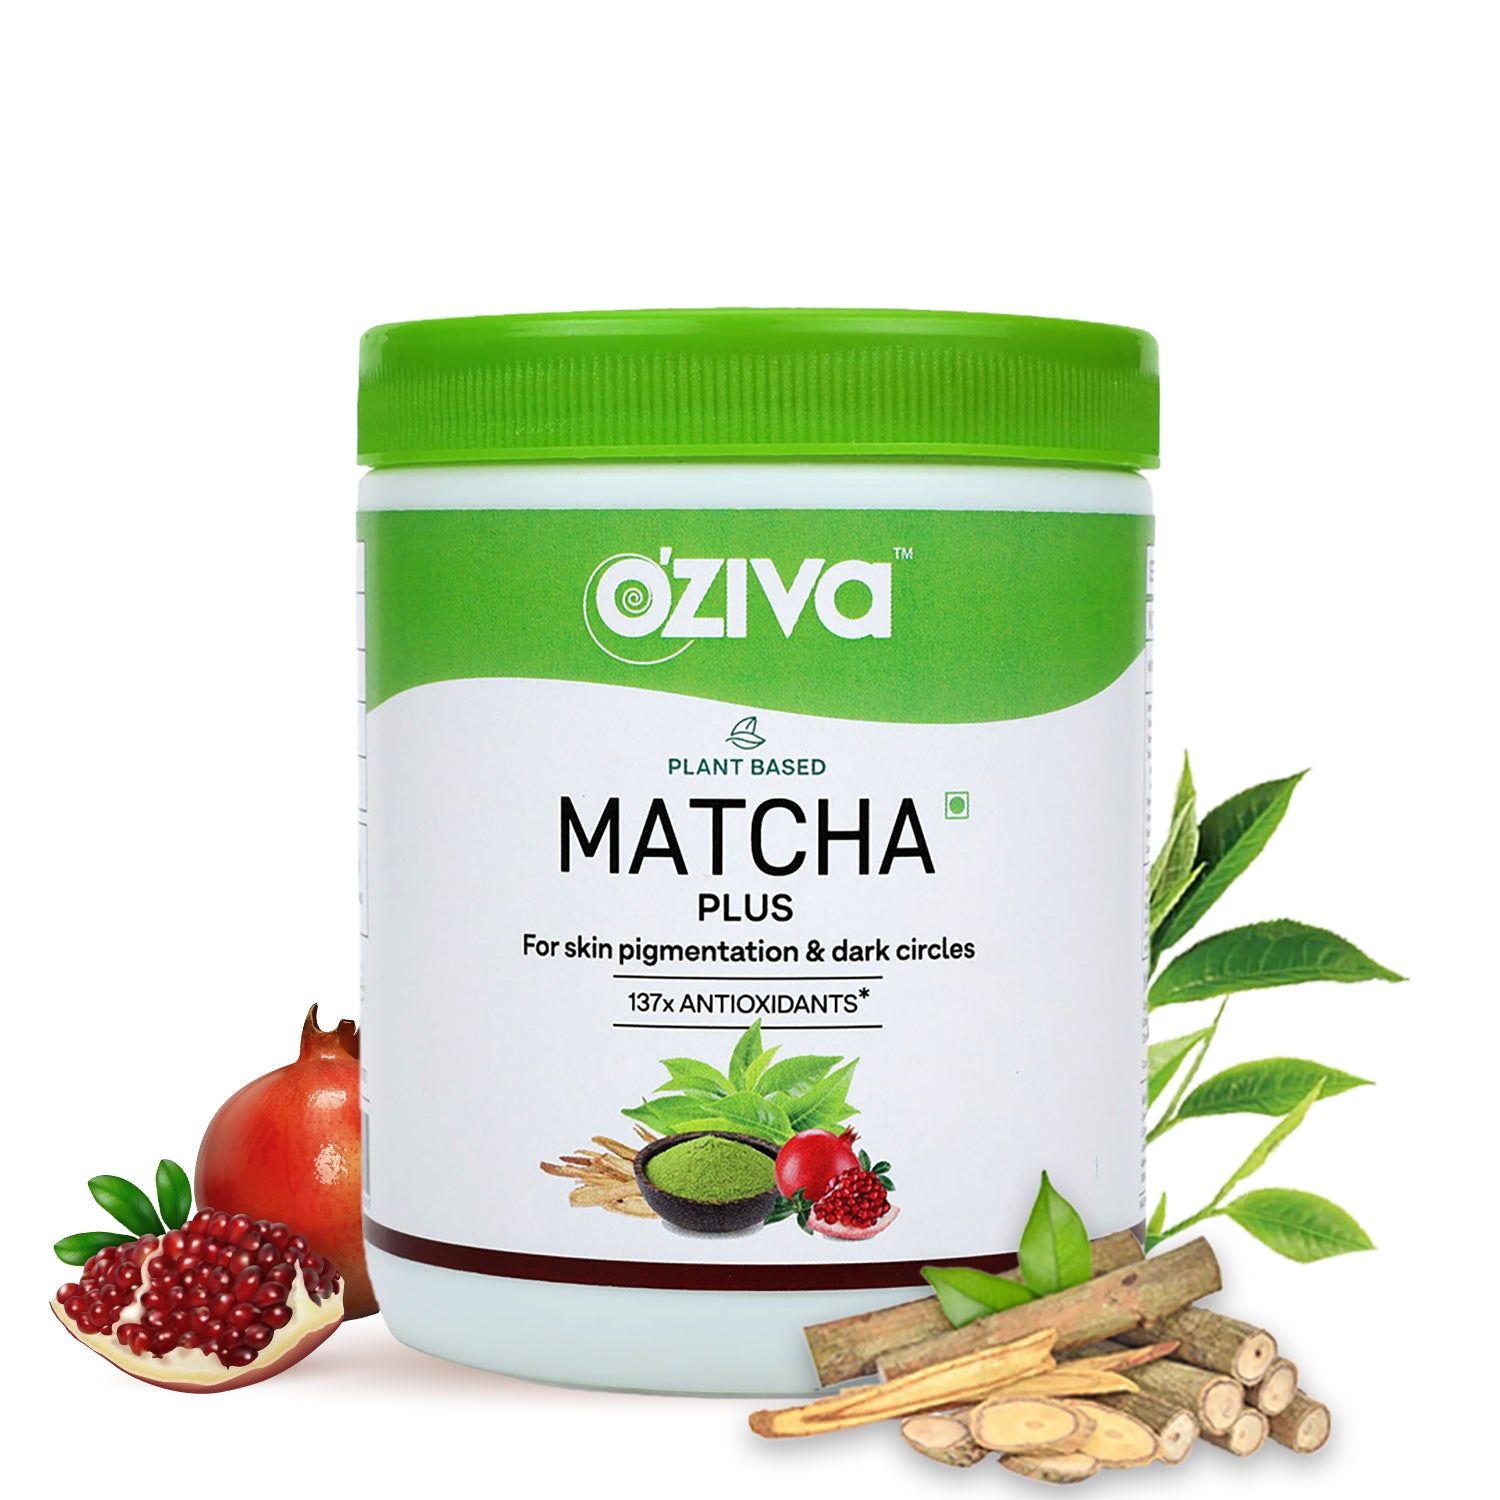 OZiva Plant Based Matcha Plus Image